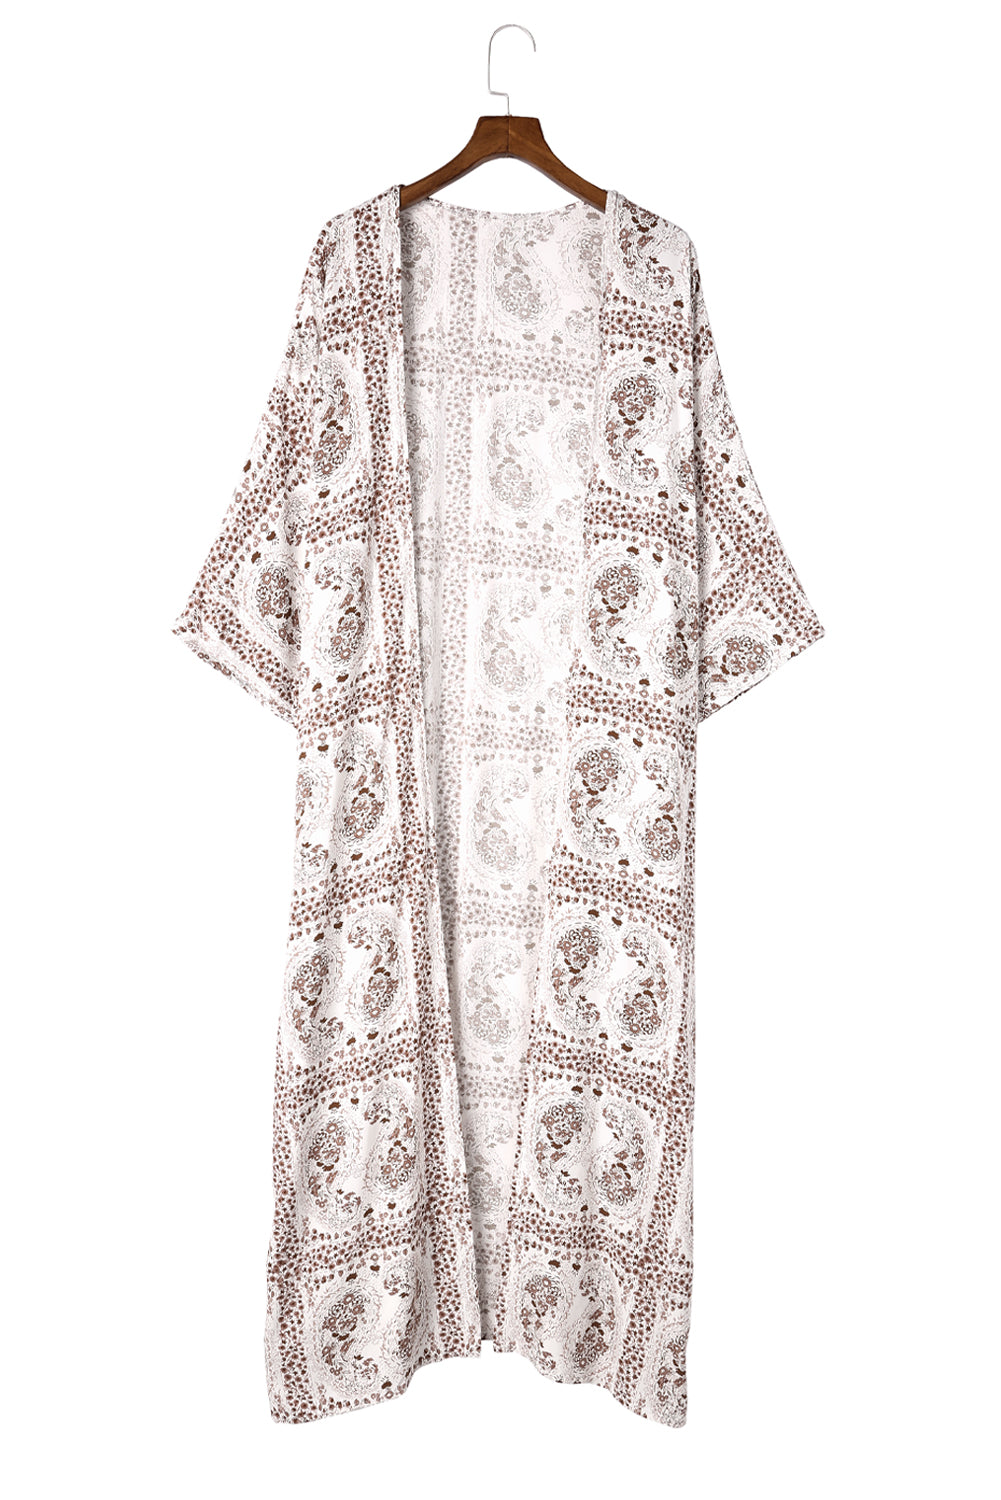 Dolman Sleeves Printed Kimono Kimonos JT's Designer Fashion